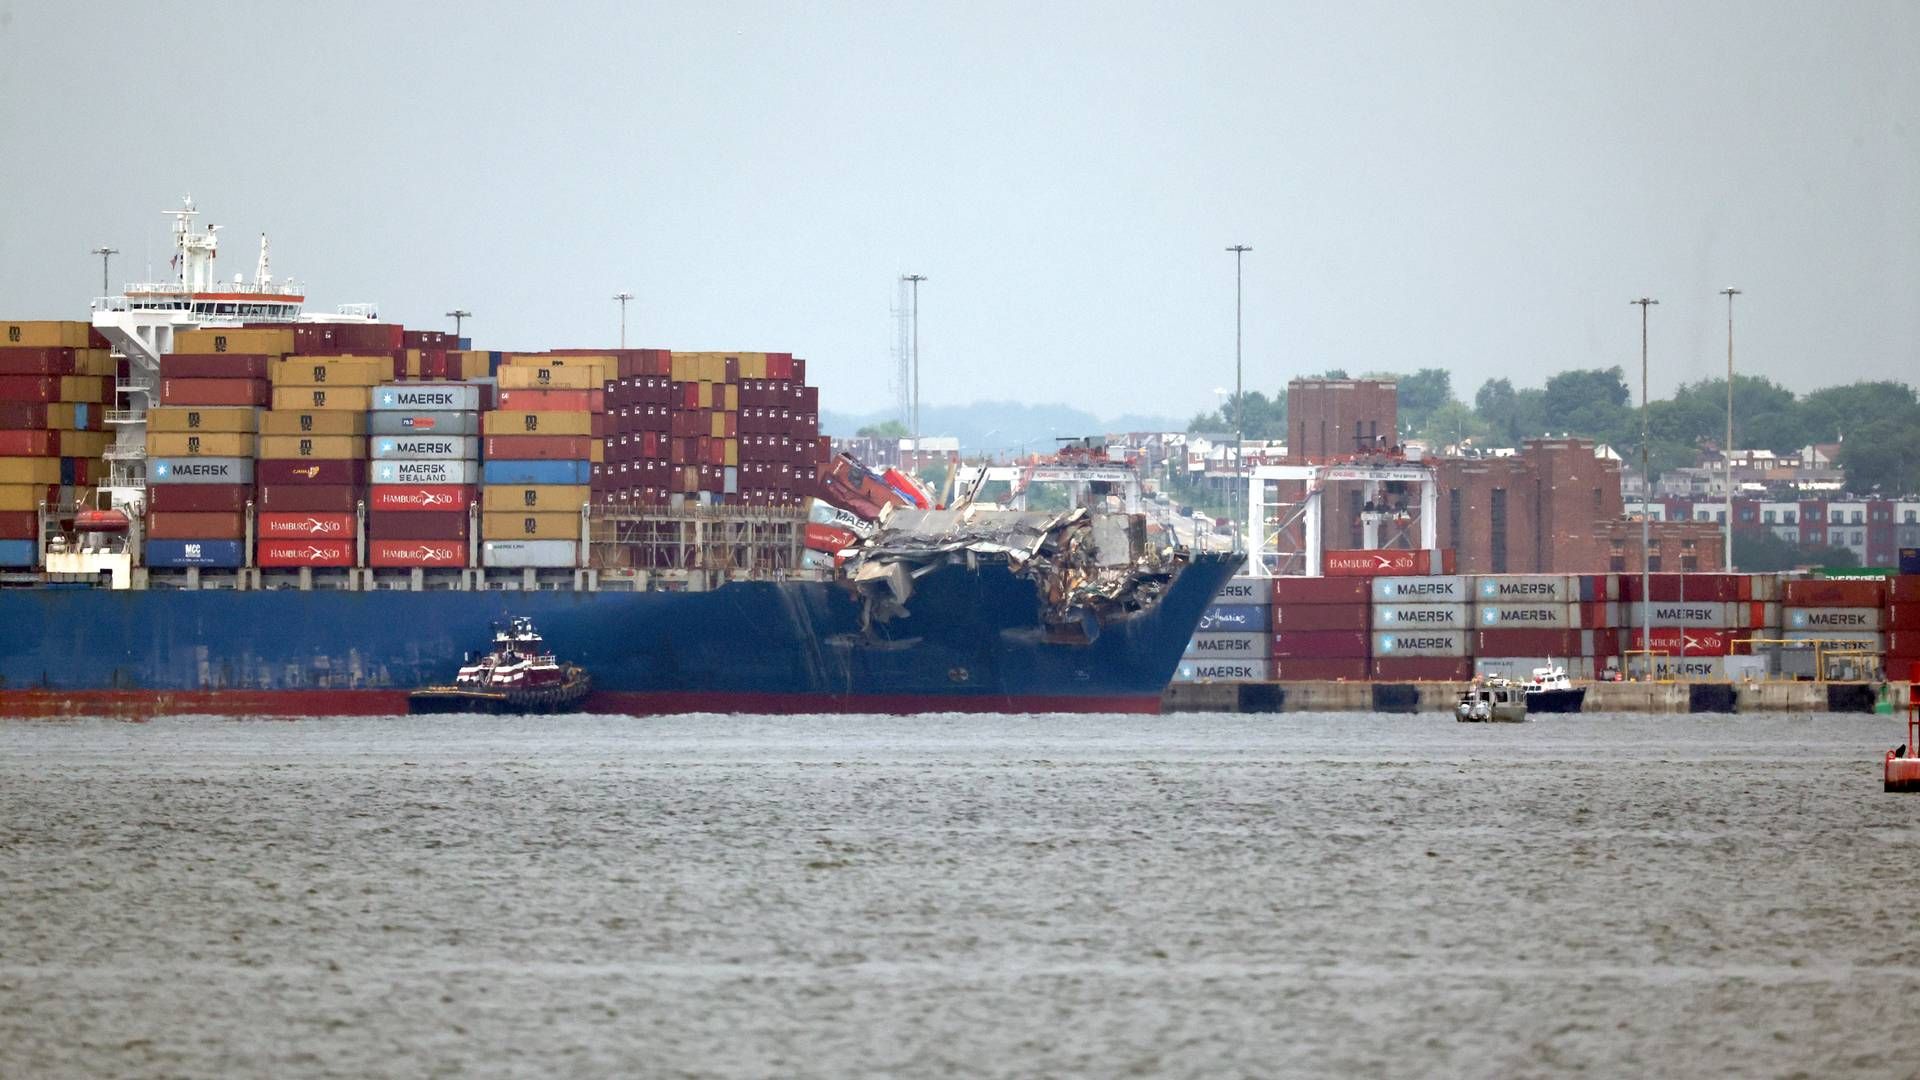 Containerskibet, der i slutningen af marts sejlede ind i Key-broen og fik den til at kollapse, havde navnet ”Dali.” | Foto: Mpi34/AP/Ritzau Scanpix